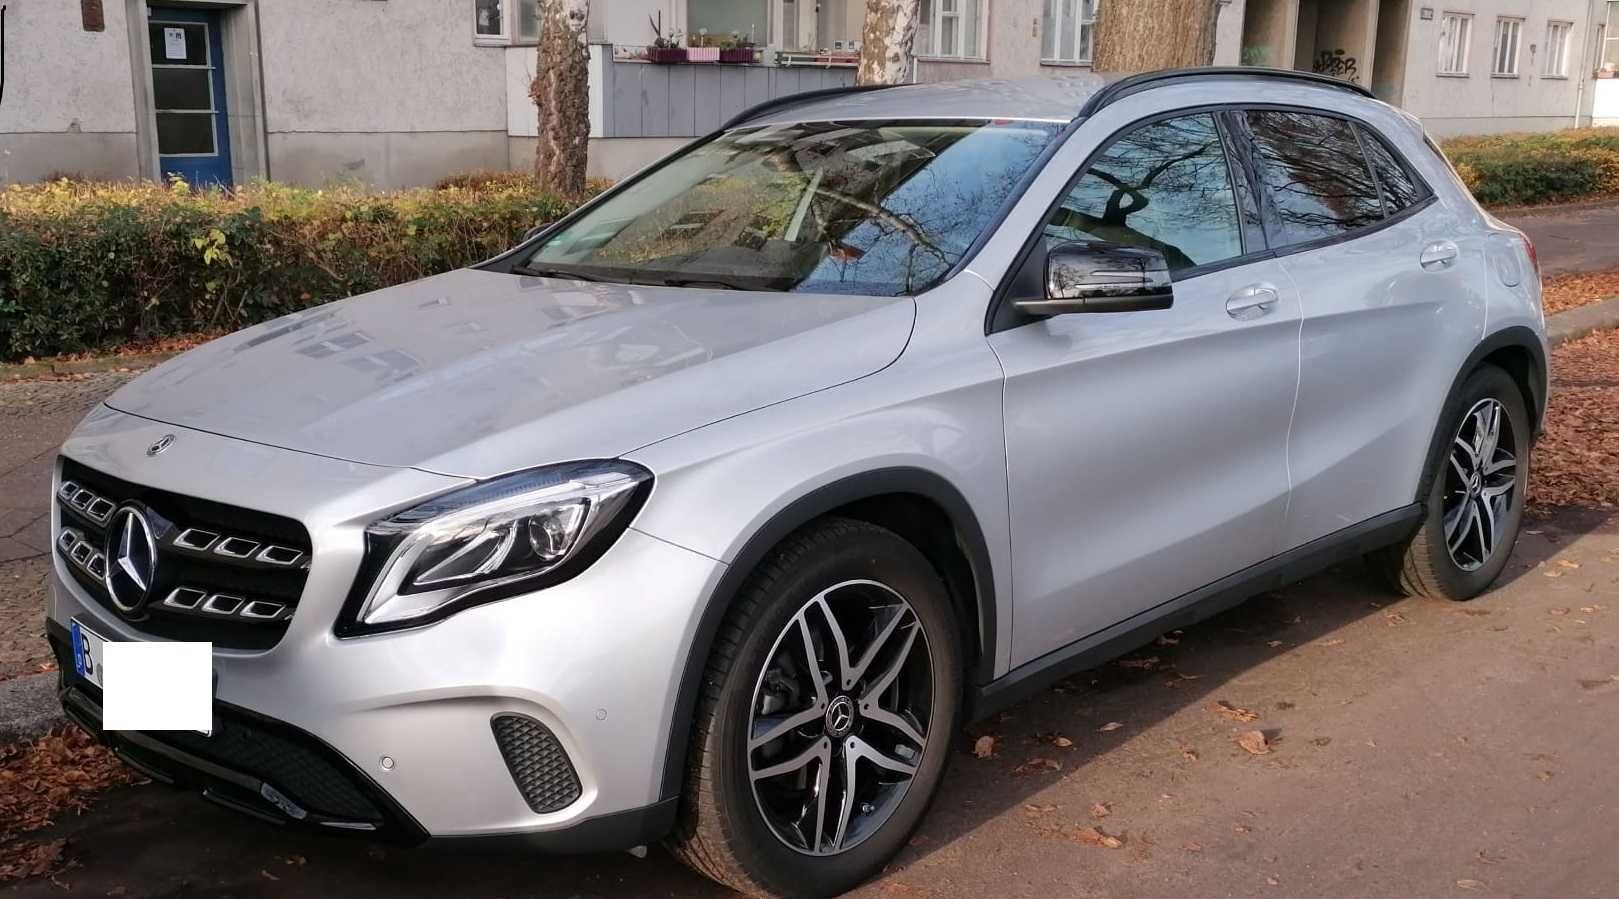 Mercedes GLA 200; 2019; Benzyna; 156 KM